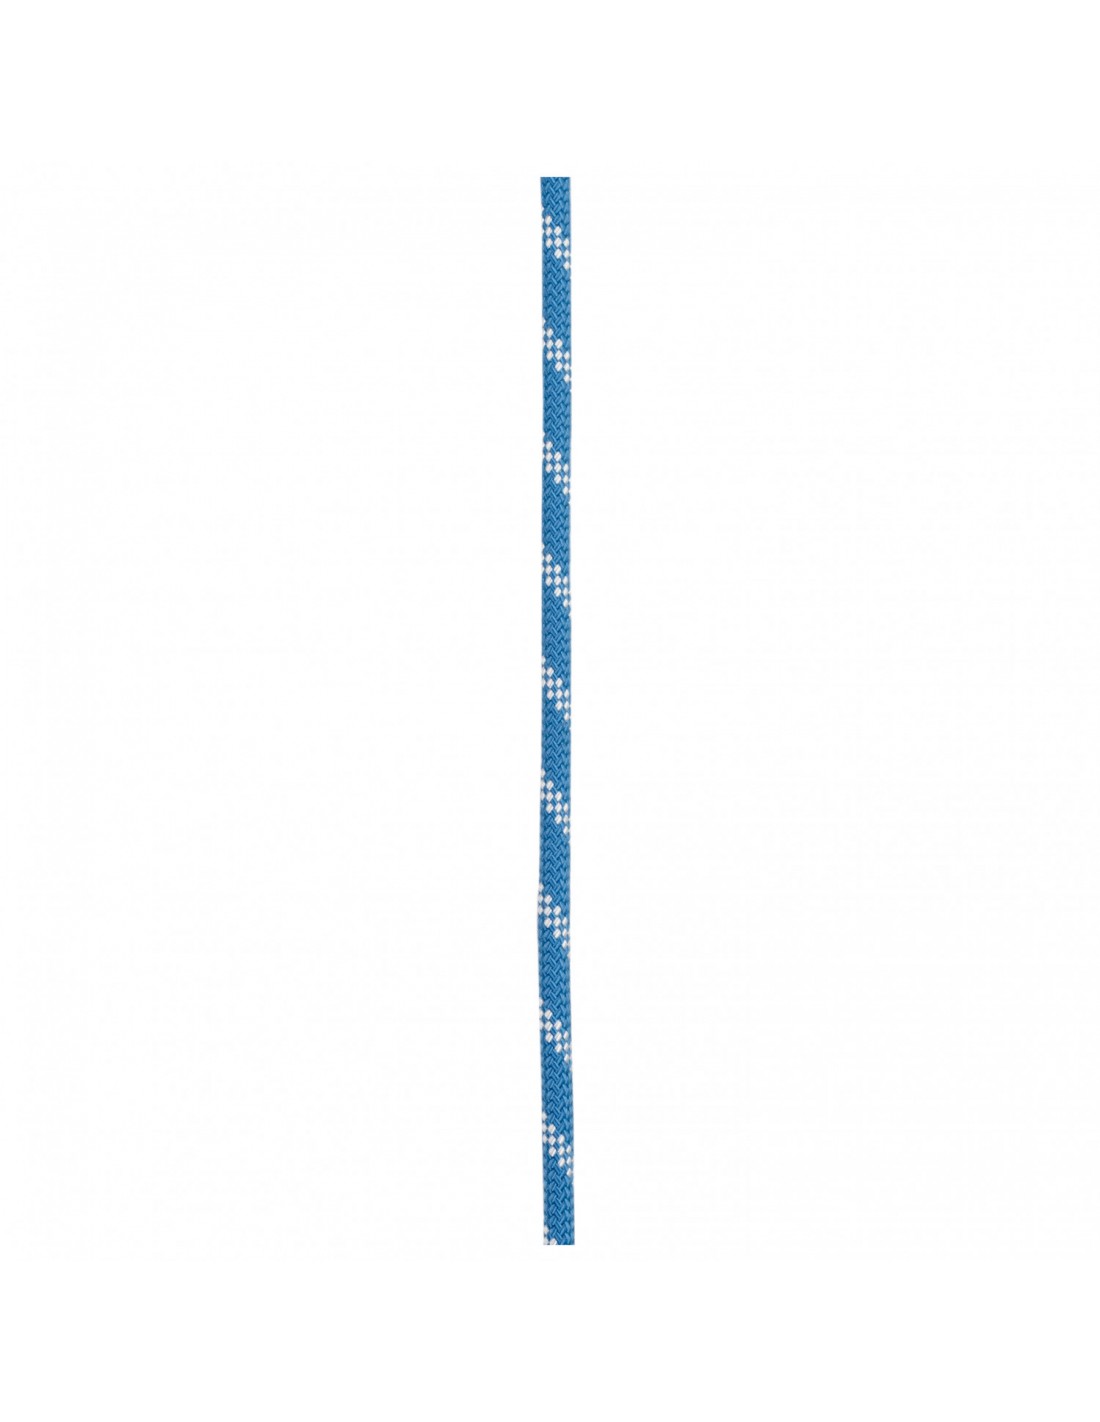 Edelrid Kletterseil Prostatic Synctec 10,5 mm, blue, 100 Meter Seildurchmesser - 10.1 - 10.5 mm, Seilvariante - Statikseil, Seilfarbe - Blau, Seillänge - 100 m, Seilgewicht - 76 - 80 g / m, von Edelrid